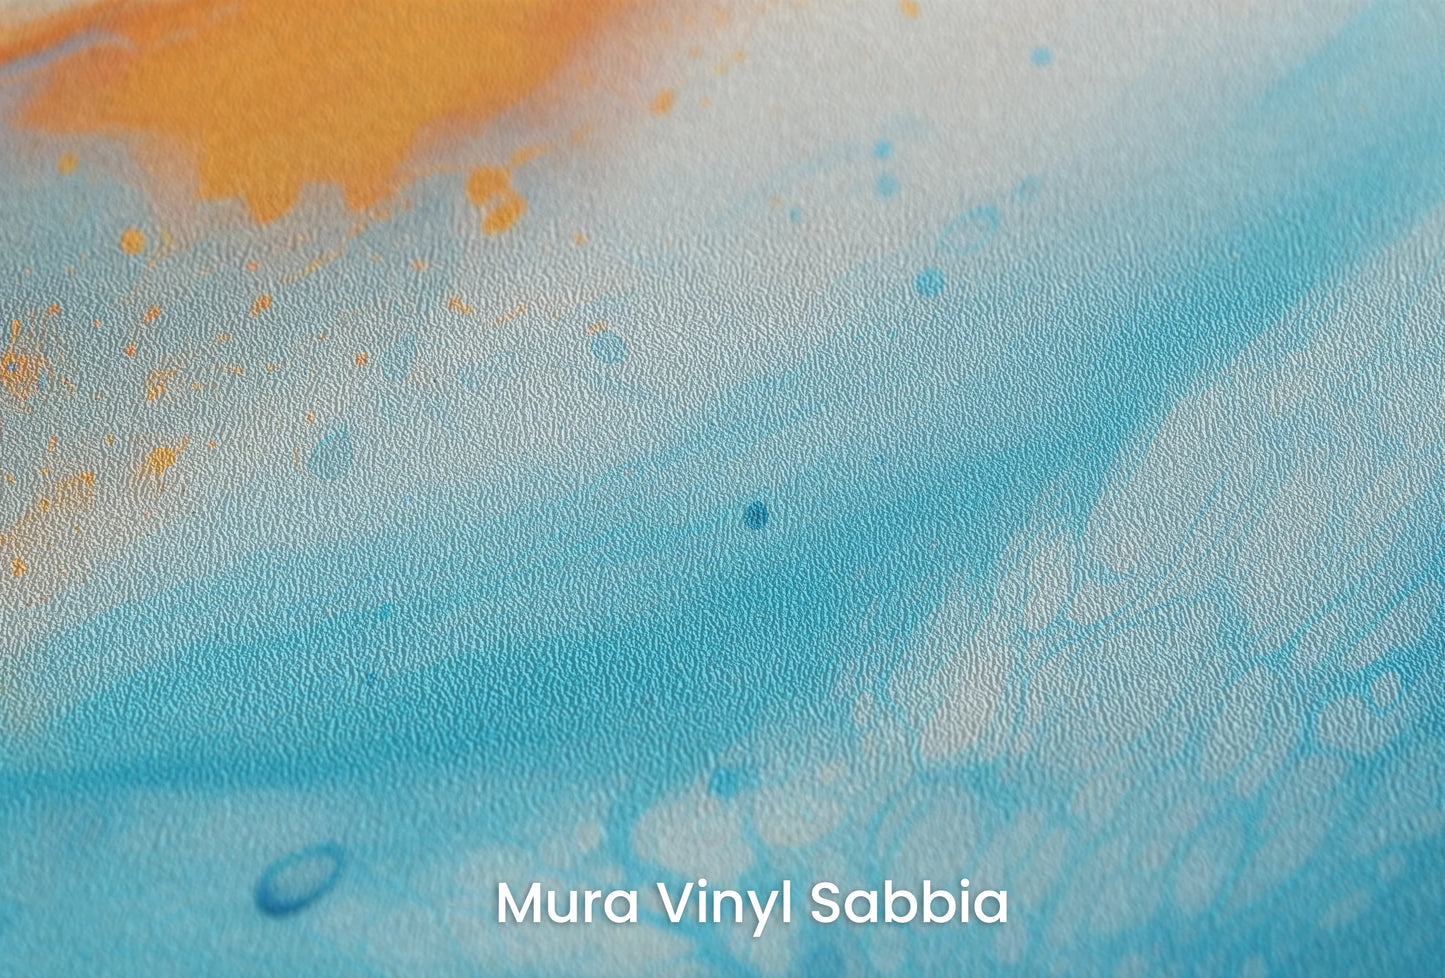 Zbliżenie na artystyczną fototapetę o nazwie Martian Surface na podłożu Mura Vinyl Sabbia struktura grubego ziarna piasku.